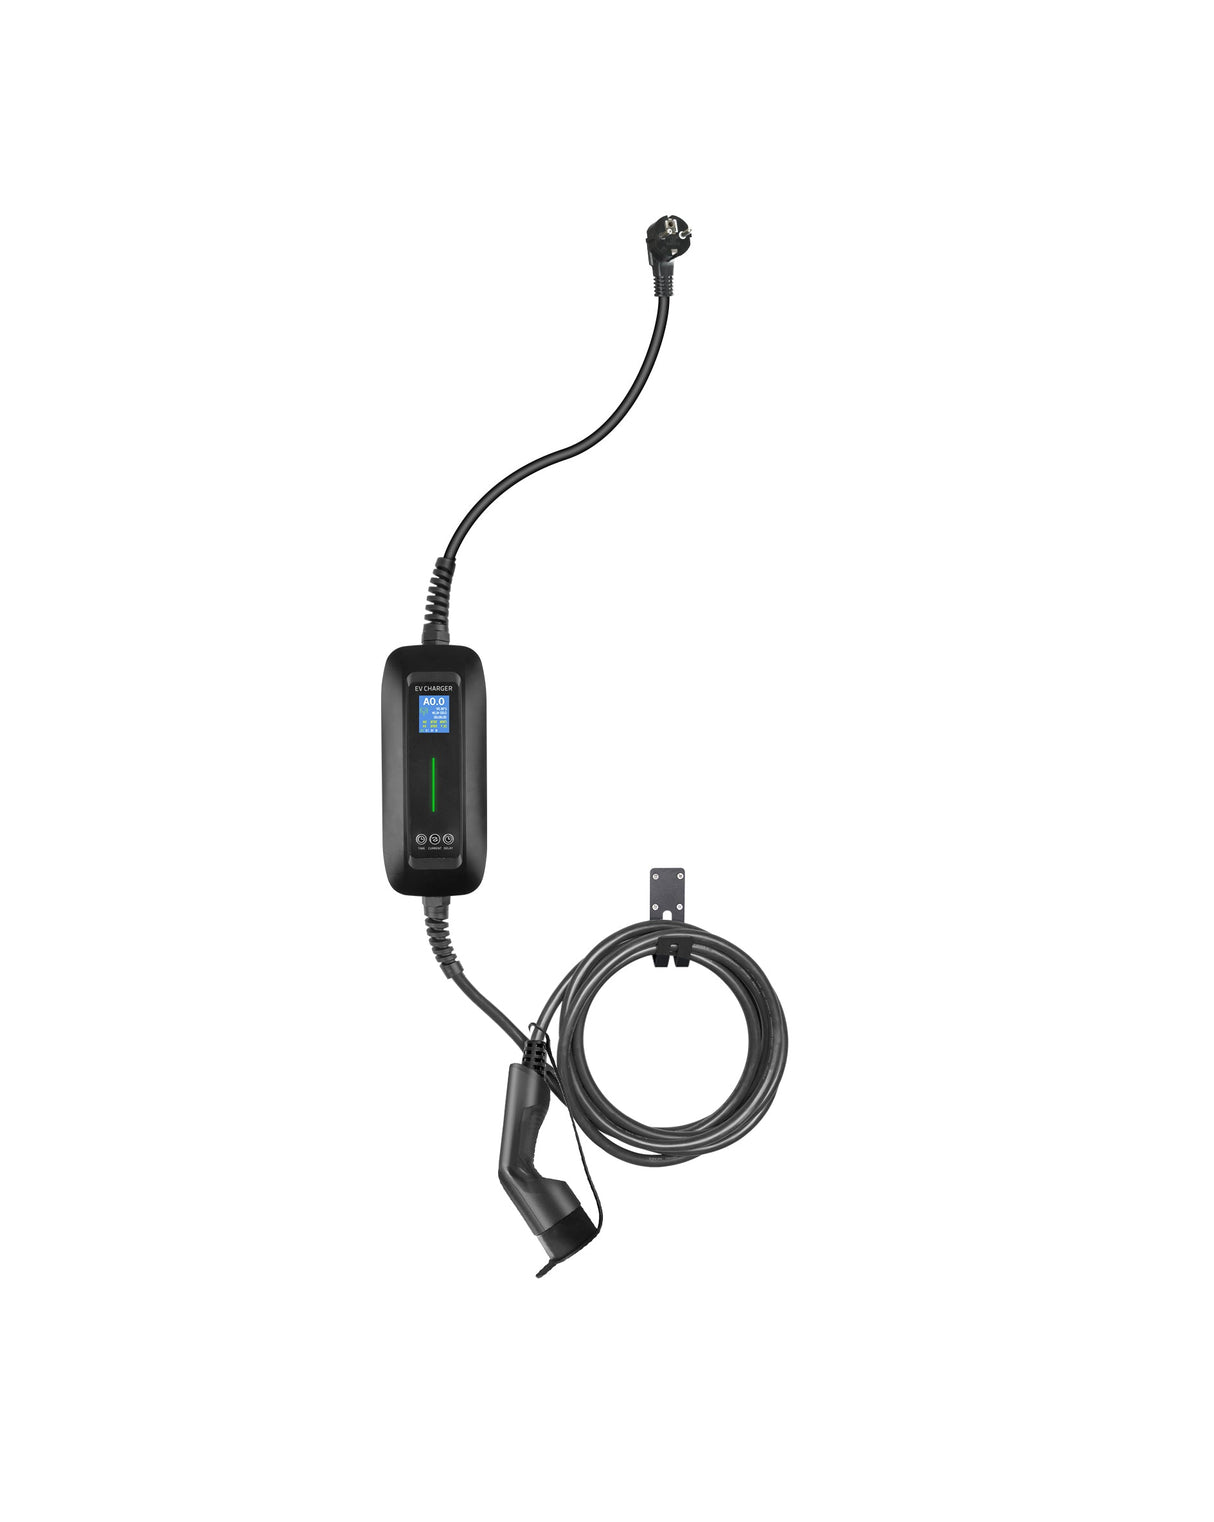 Chargeur mobile Jeep Compass - LCD Black Type 2 à Schuko - Fonction de chargement et de mémoire basalisée